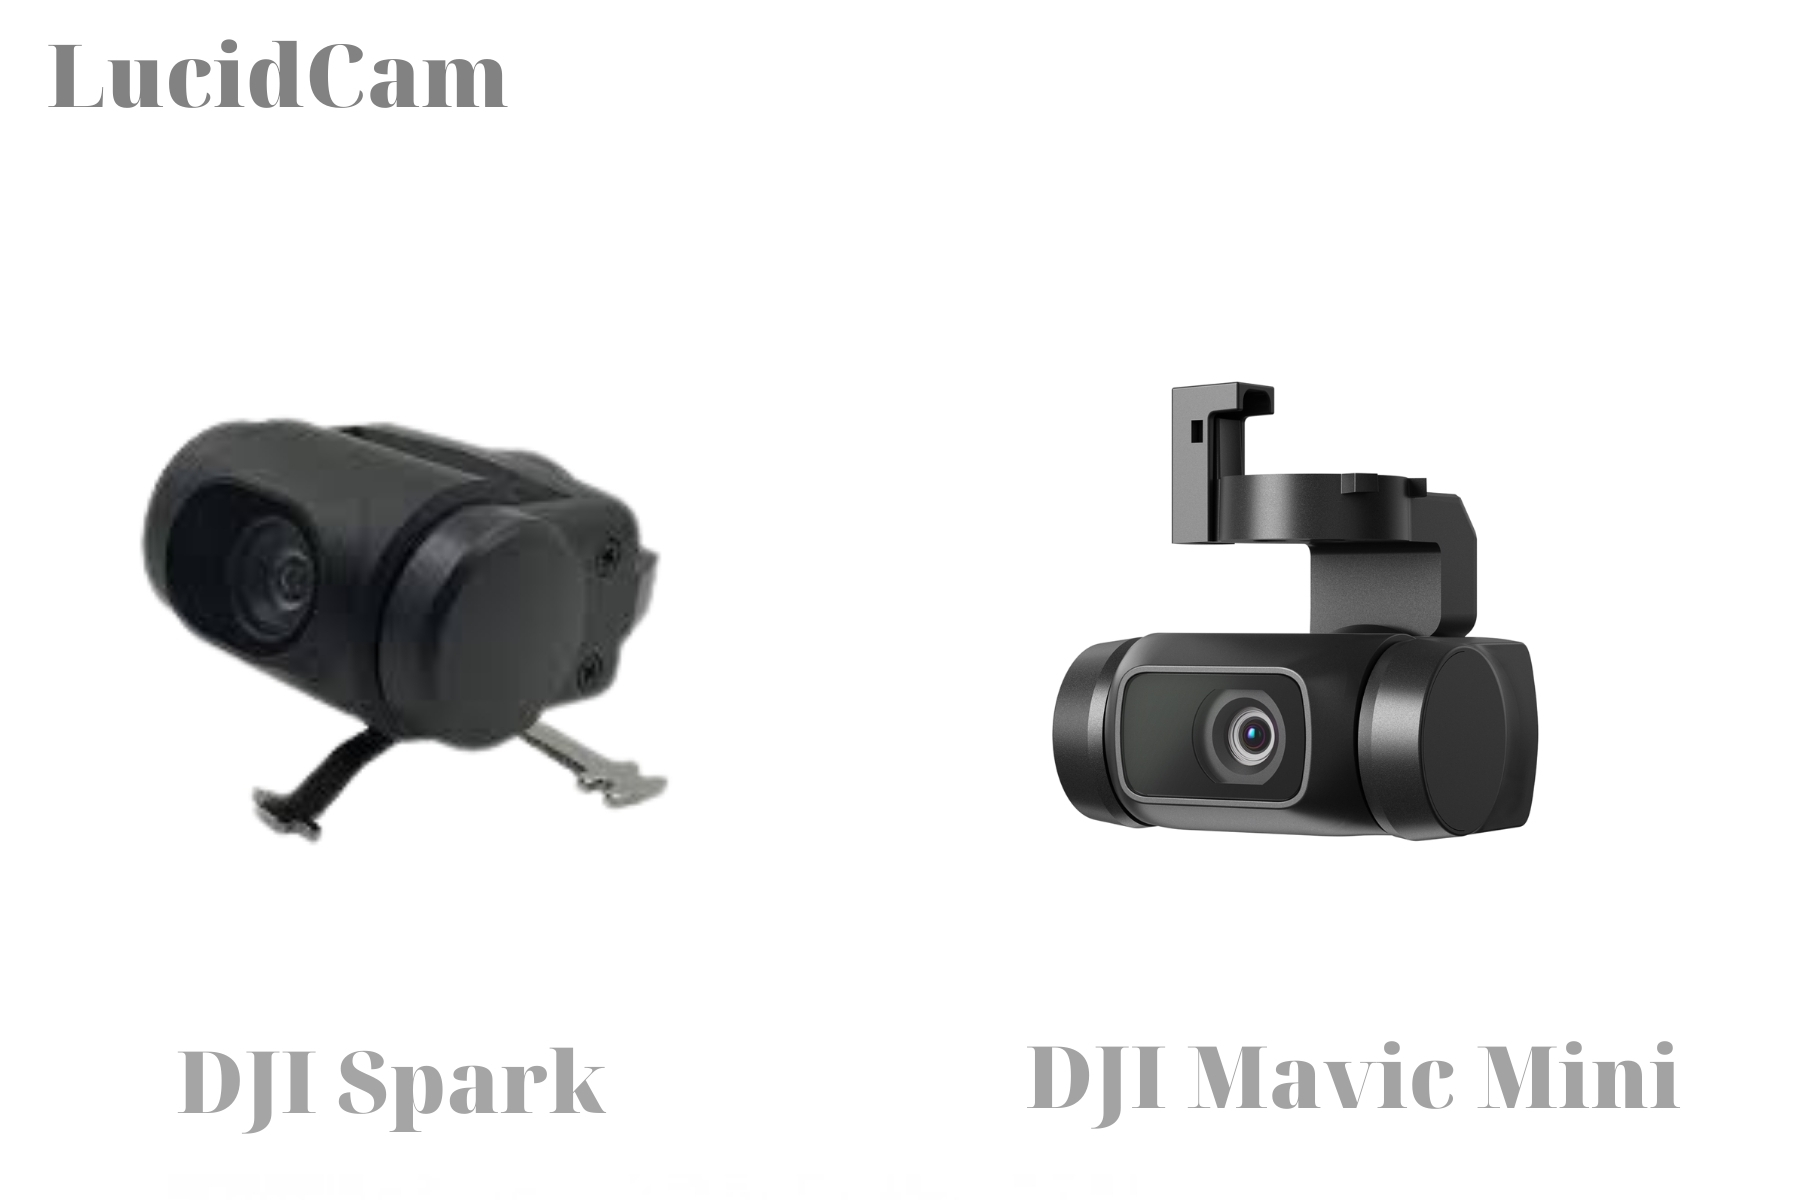 DJI Mavic Mini vs DJI Spark Drone - camera